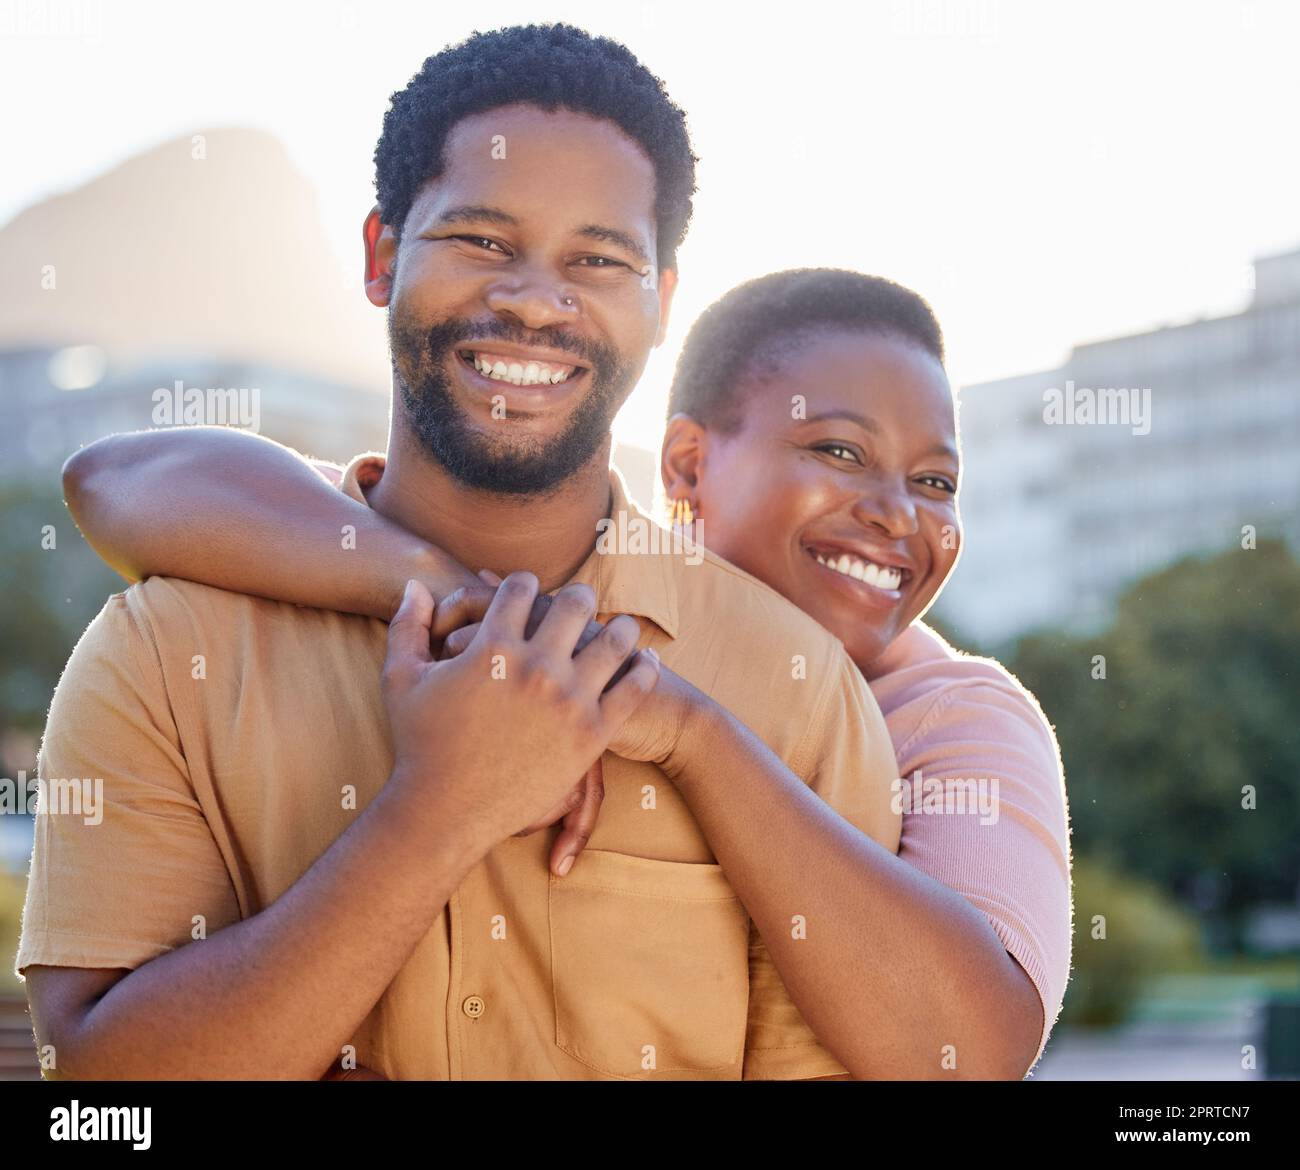 Portrait, heureux et couple sourire avec hug pendant que dans la ville sur une date en été. Homme et femme afro-américains se liant avec joie, amour et bonheur dans une relation saine ou un mariage Banque D'Images